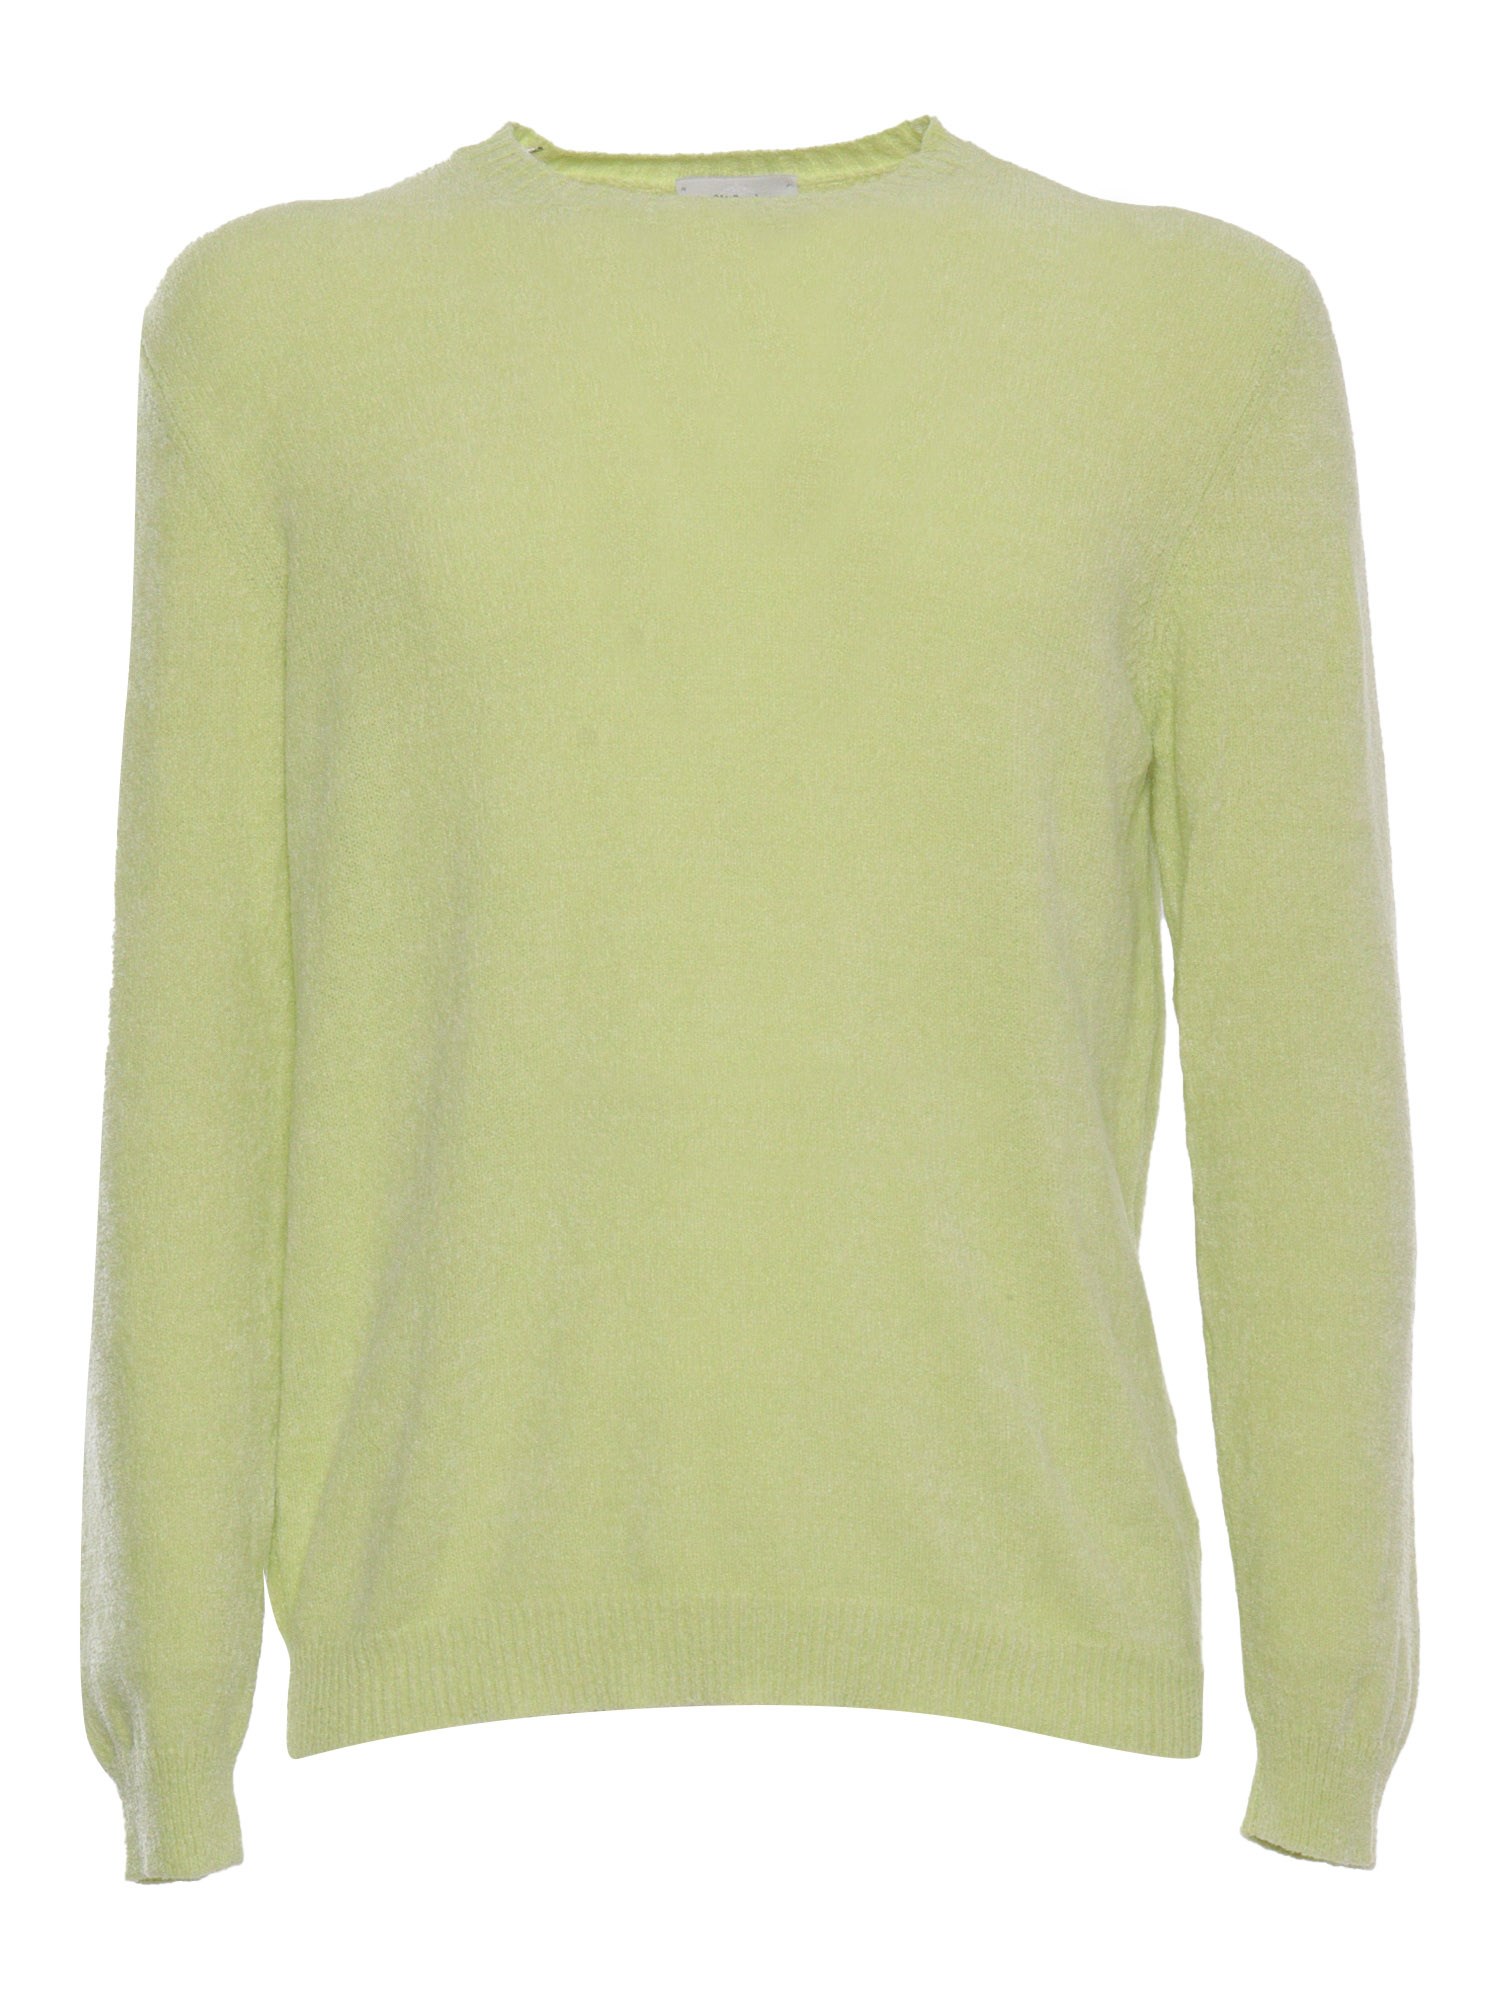 Sette Fili Cashmere Green Sweater